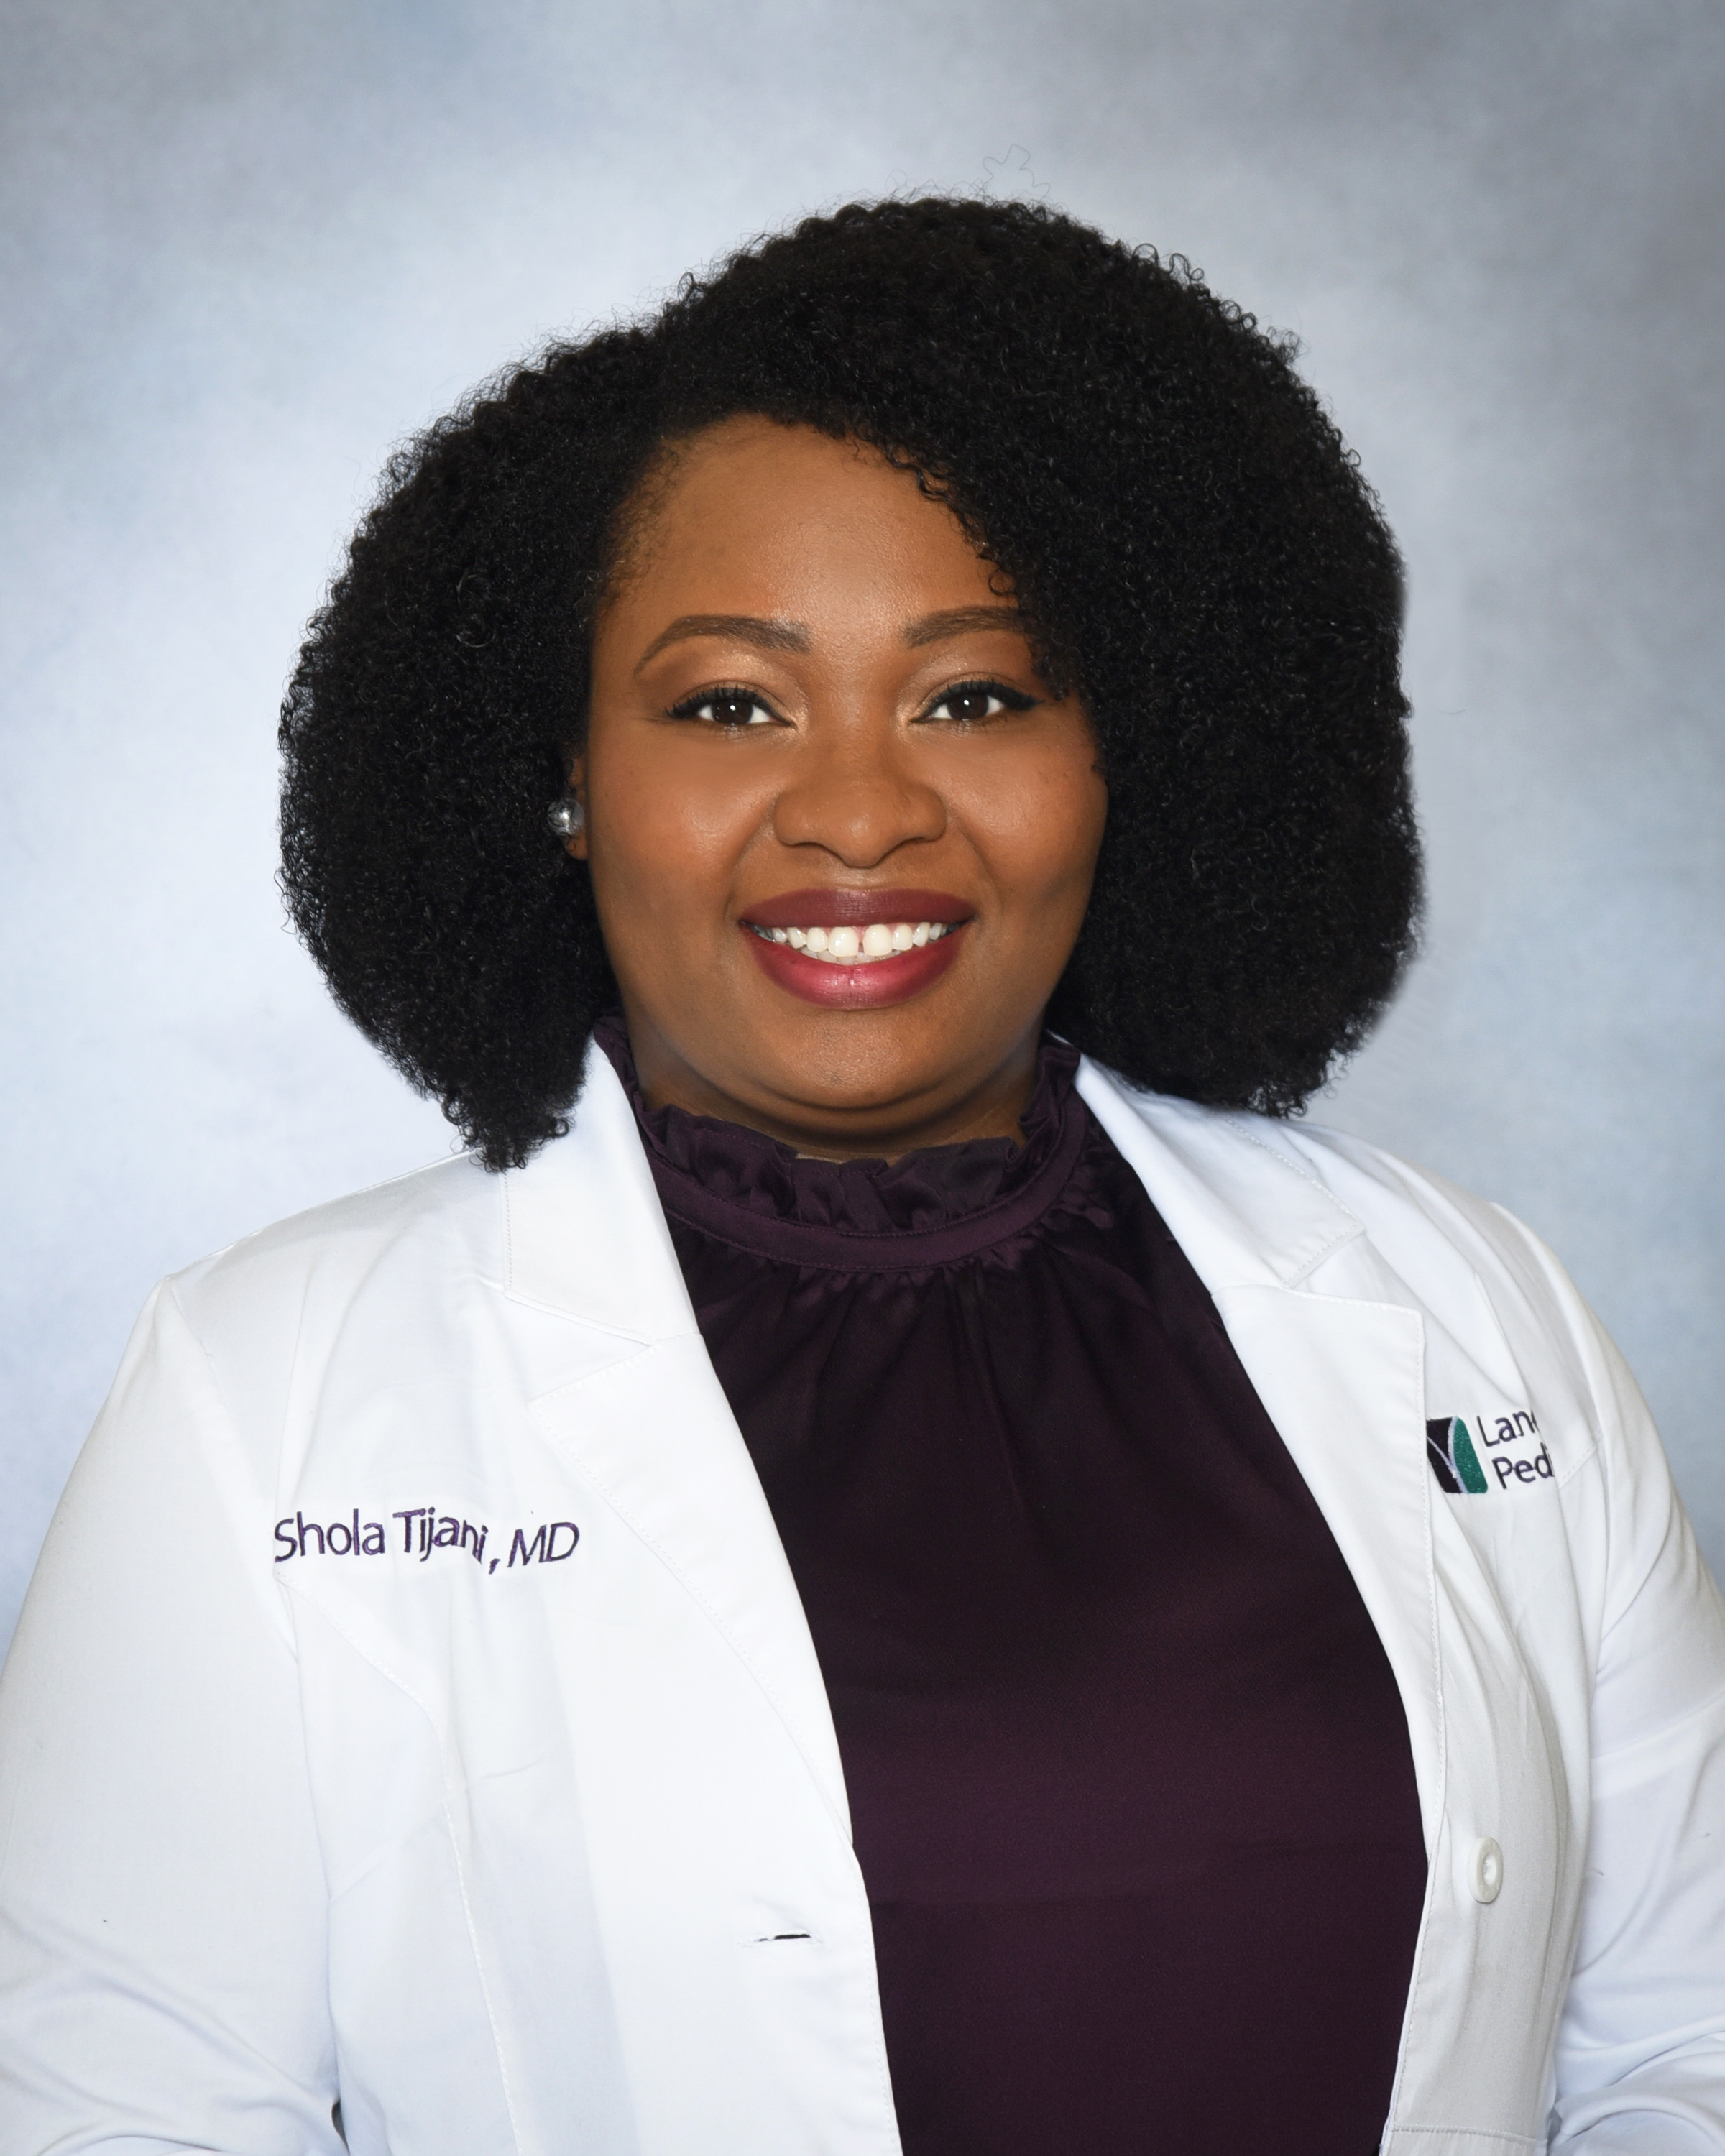 Dr. Shola Tijani Joins Lane Pediatrics